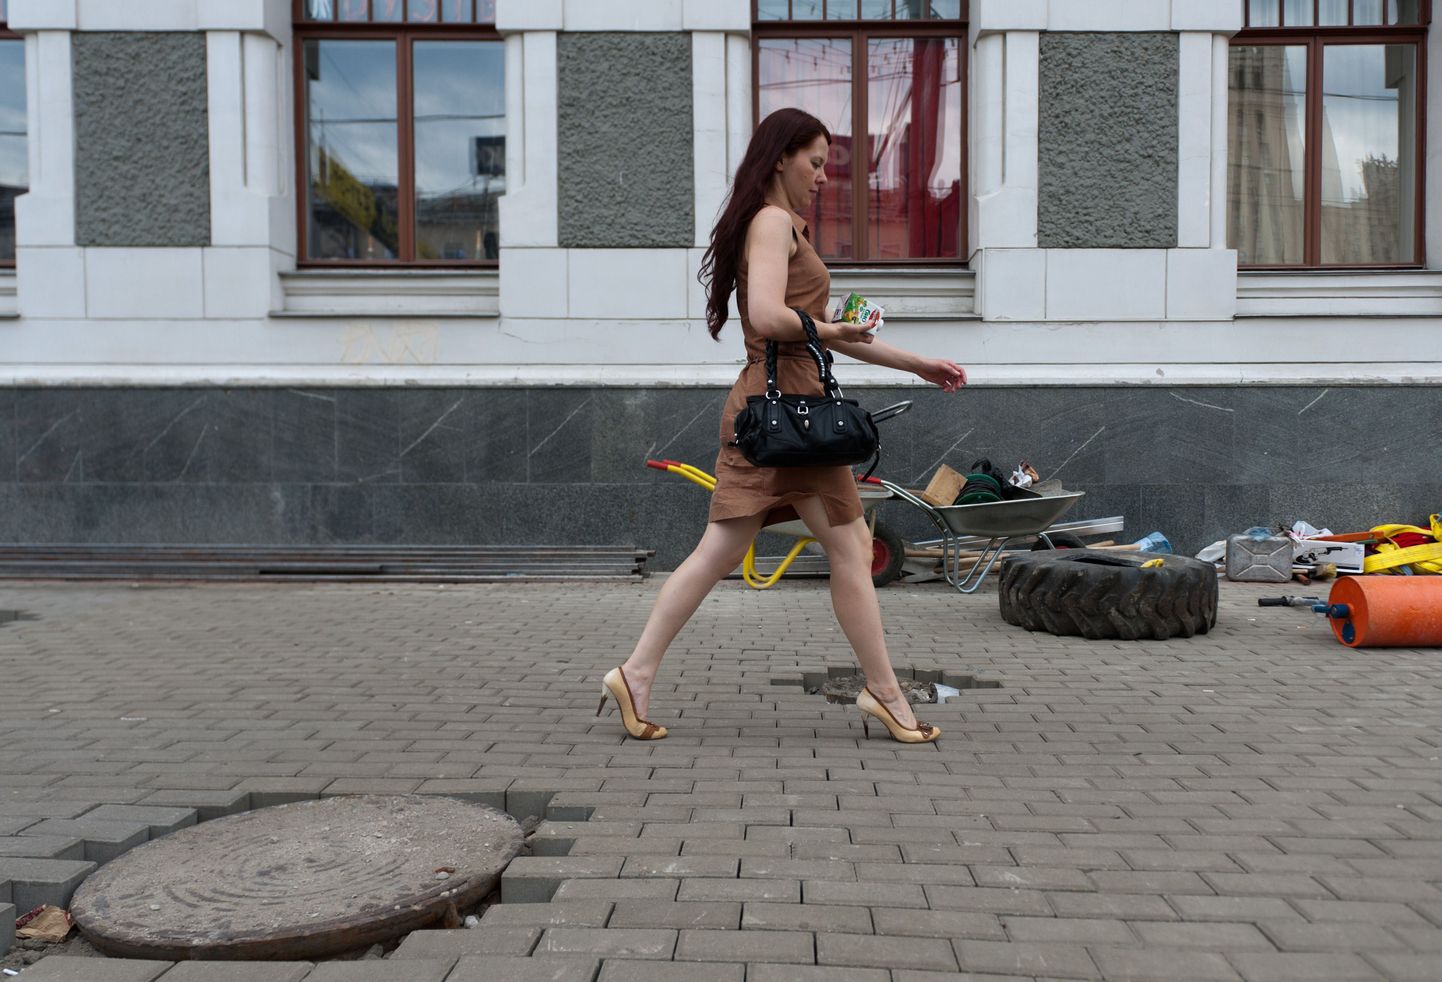 Moskvalannad ei saa enam tikk-kontsadega kingi kanda, kuna kontsad jäävad kivide vahele kinni, raskendades käimist ning lõhkudes kontsa